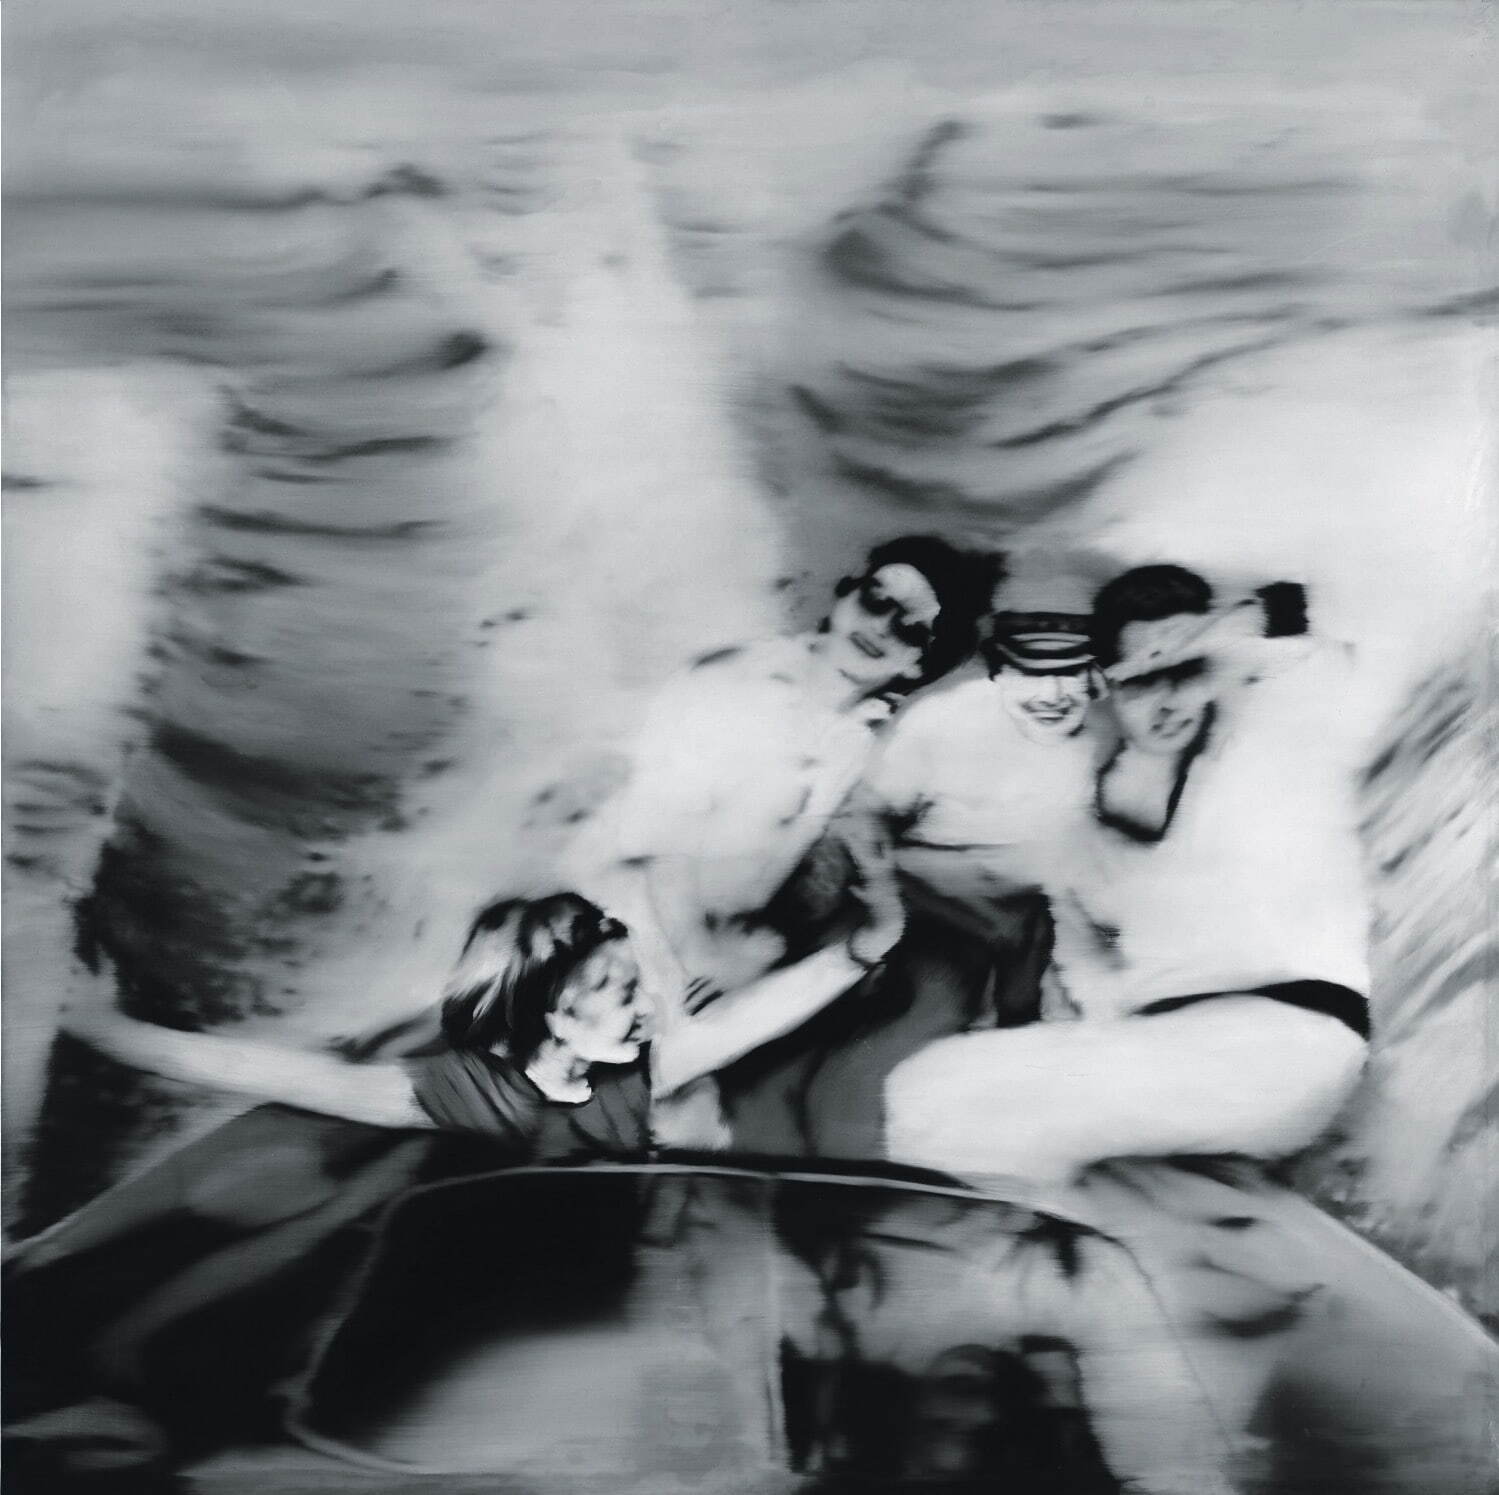 《モーターボート(第1ヴァージョン)》1965年［CR 79a］ 油彩、キャンバス 169.5×169.5cm ゲルハルト・リヒター財団蔵
©︎Gerhard Richter 2022 (07062022)